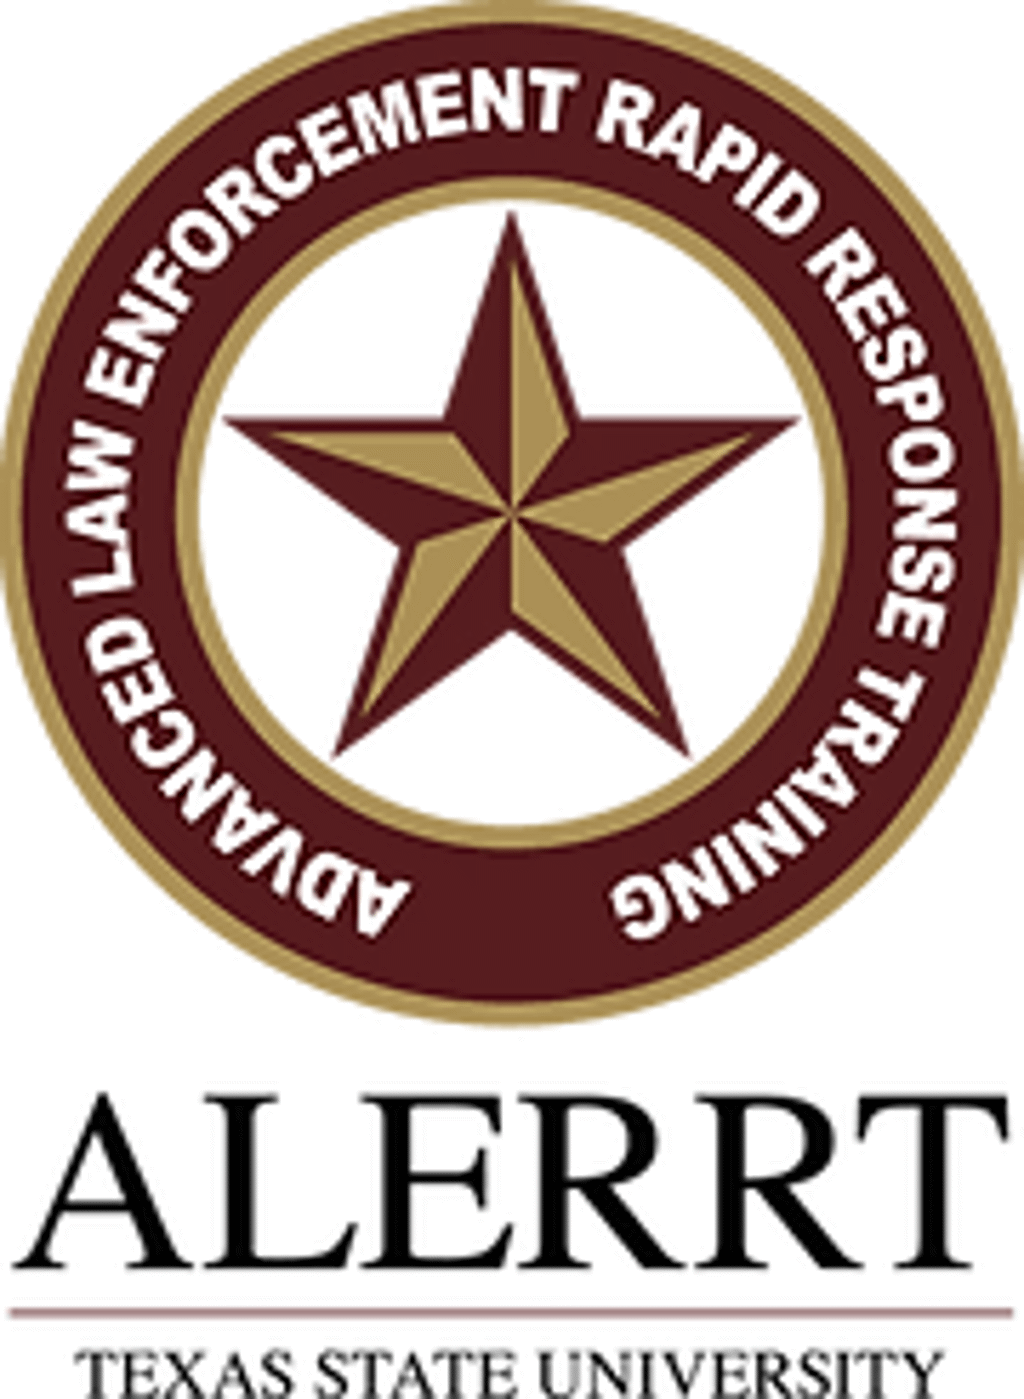 National Alerrt Conference logo